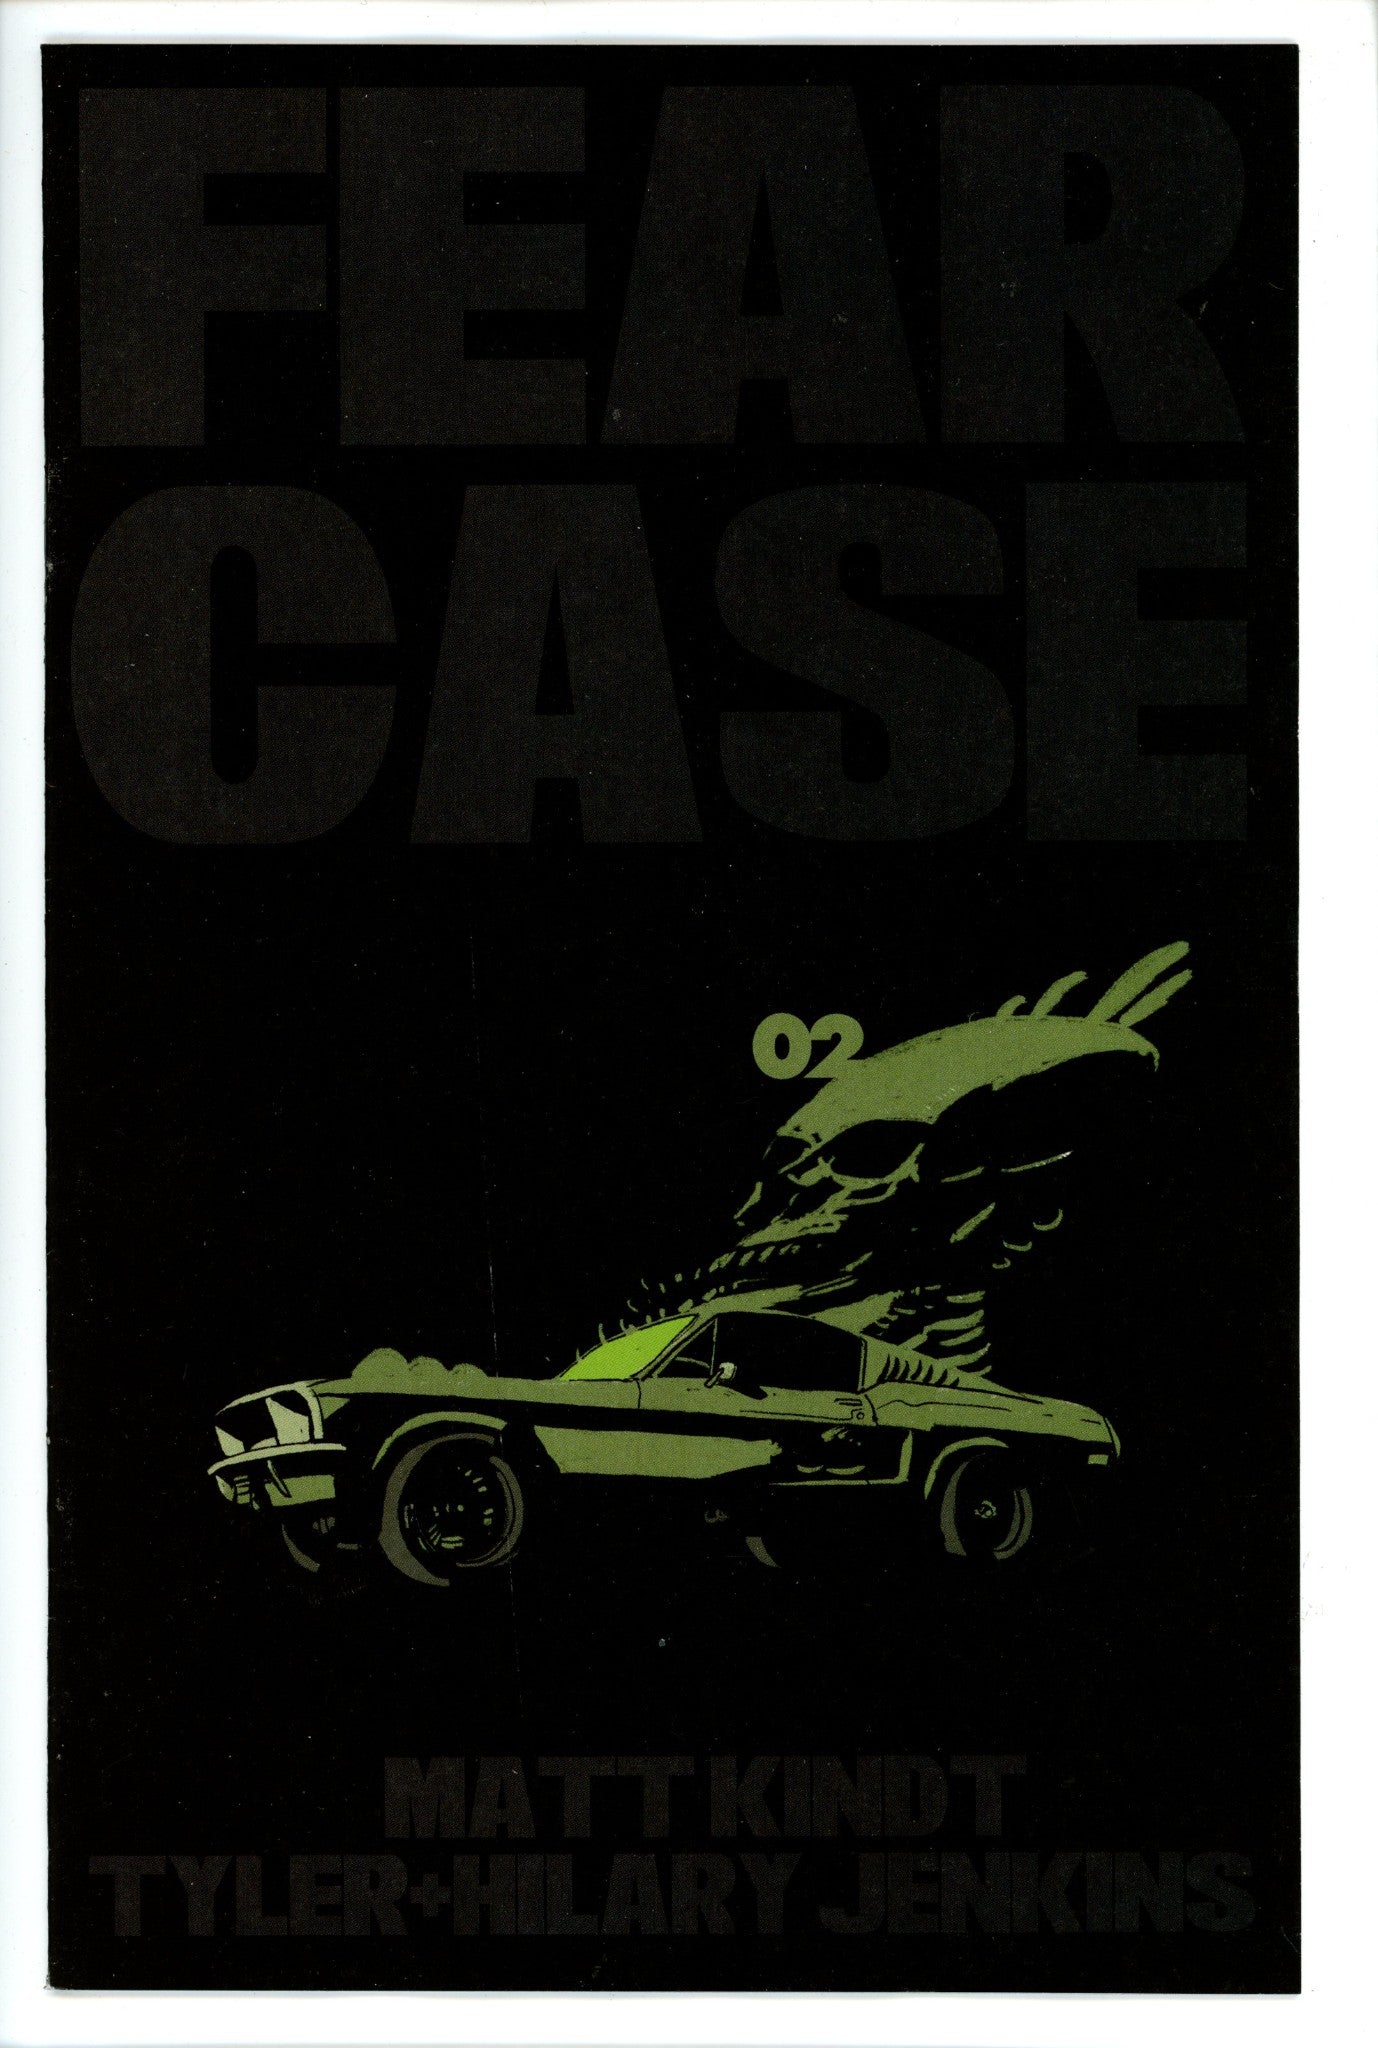 Fear Case 2-Dark Horse-CaptCan Comics Inc